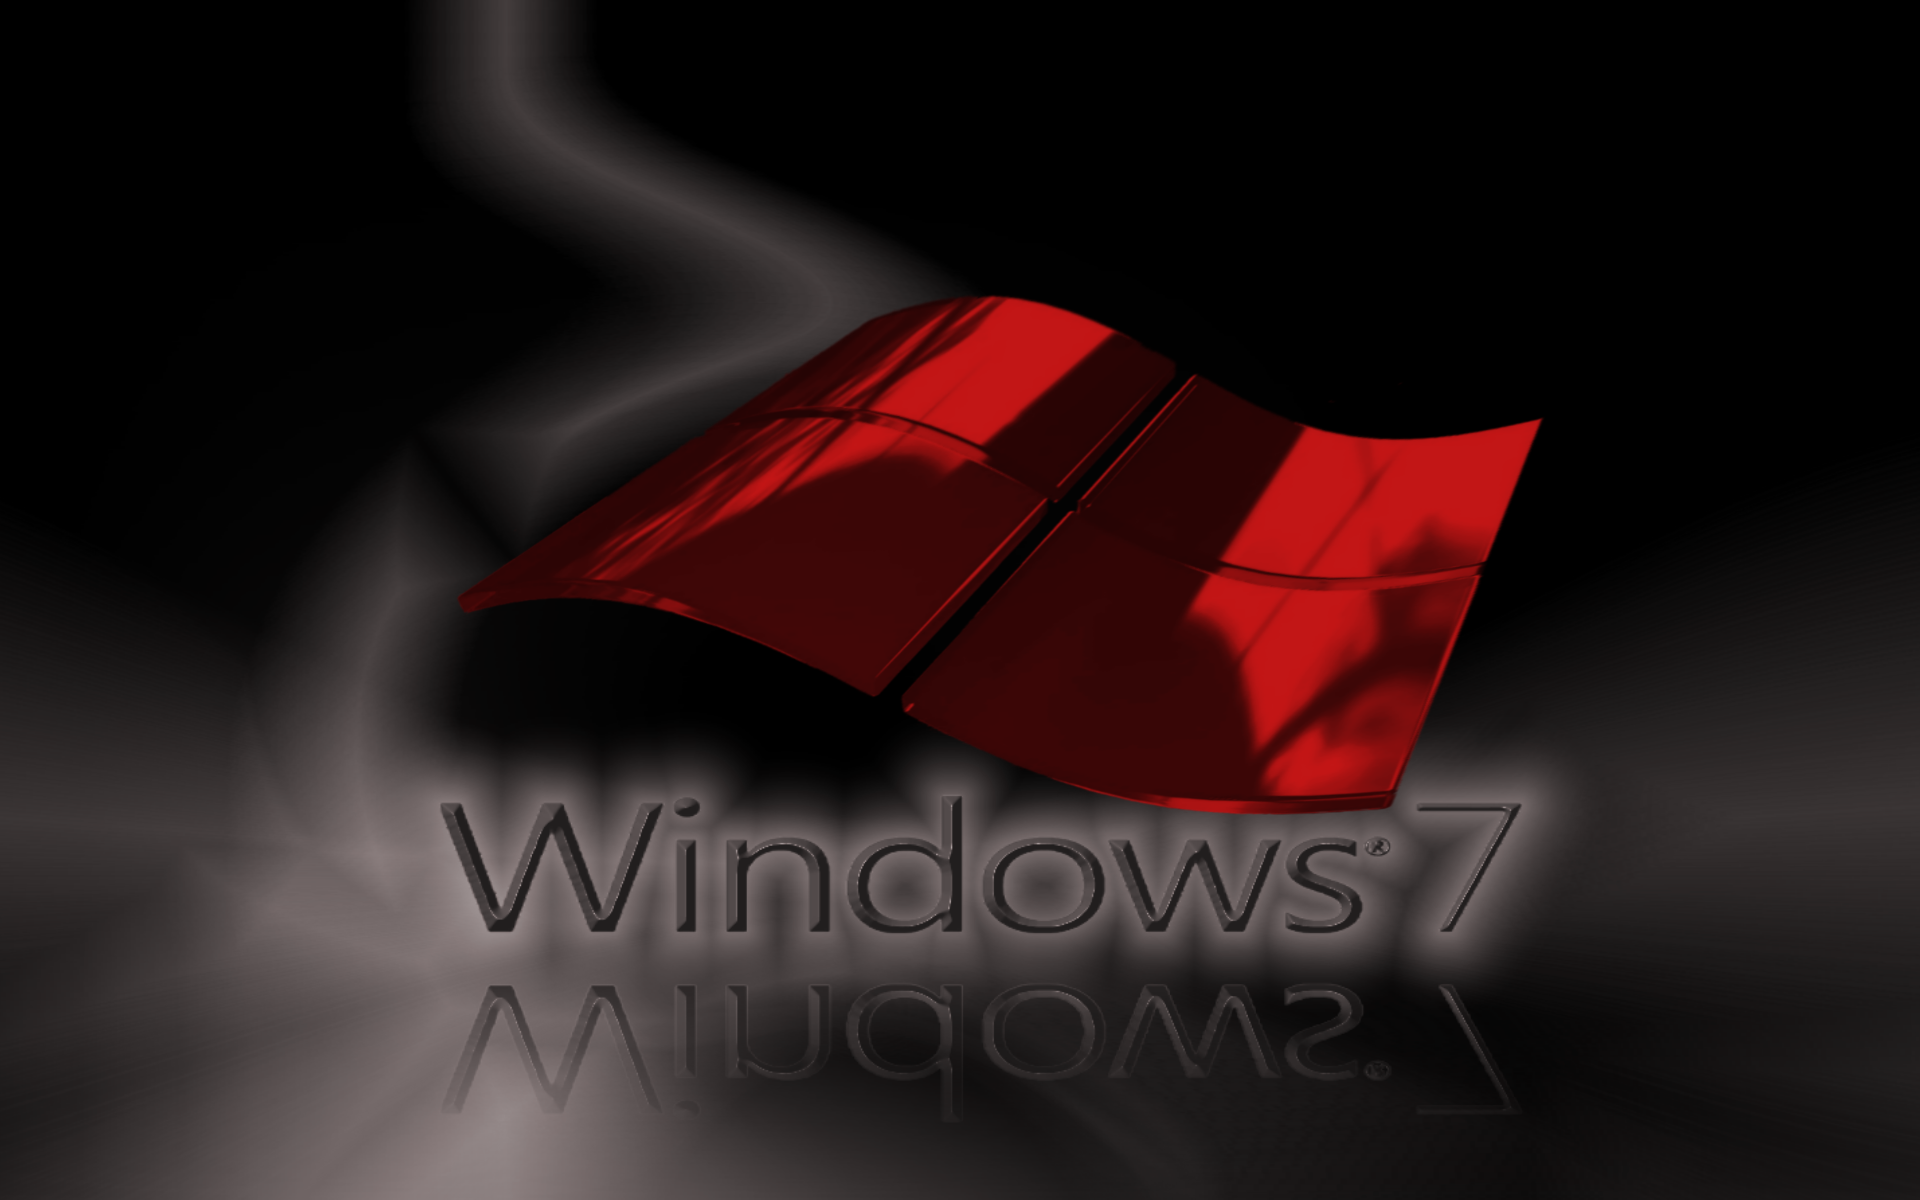 Download wallpapers Red 3d Windows logo, black background, 3d waves red  background, Windows logo, Windows emblem, 3d art, Windows for desktop free.  Pictures for desktop free